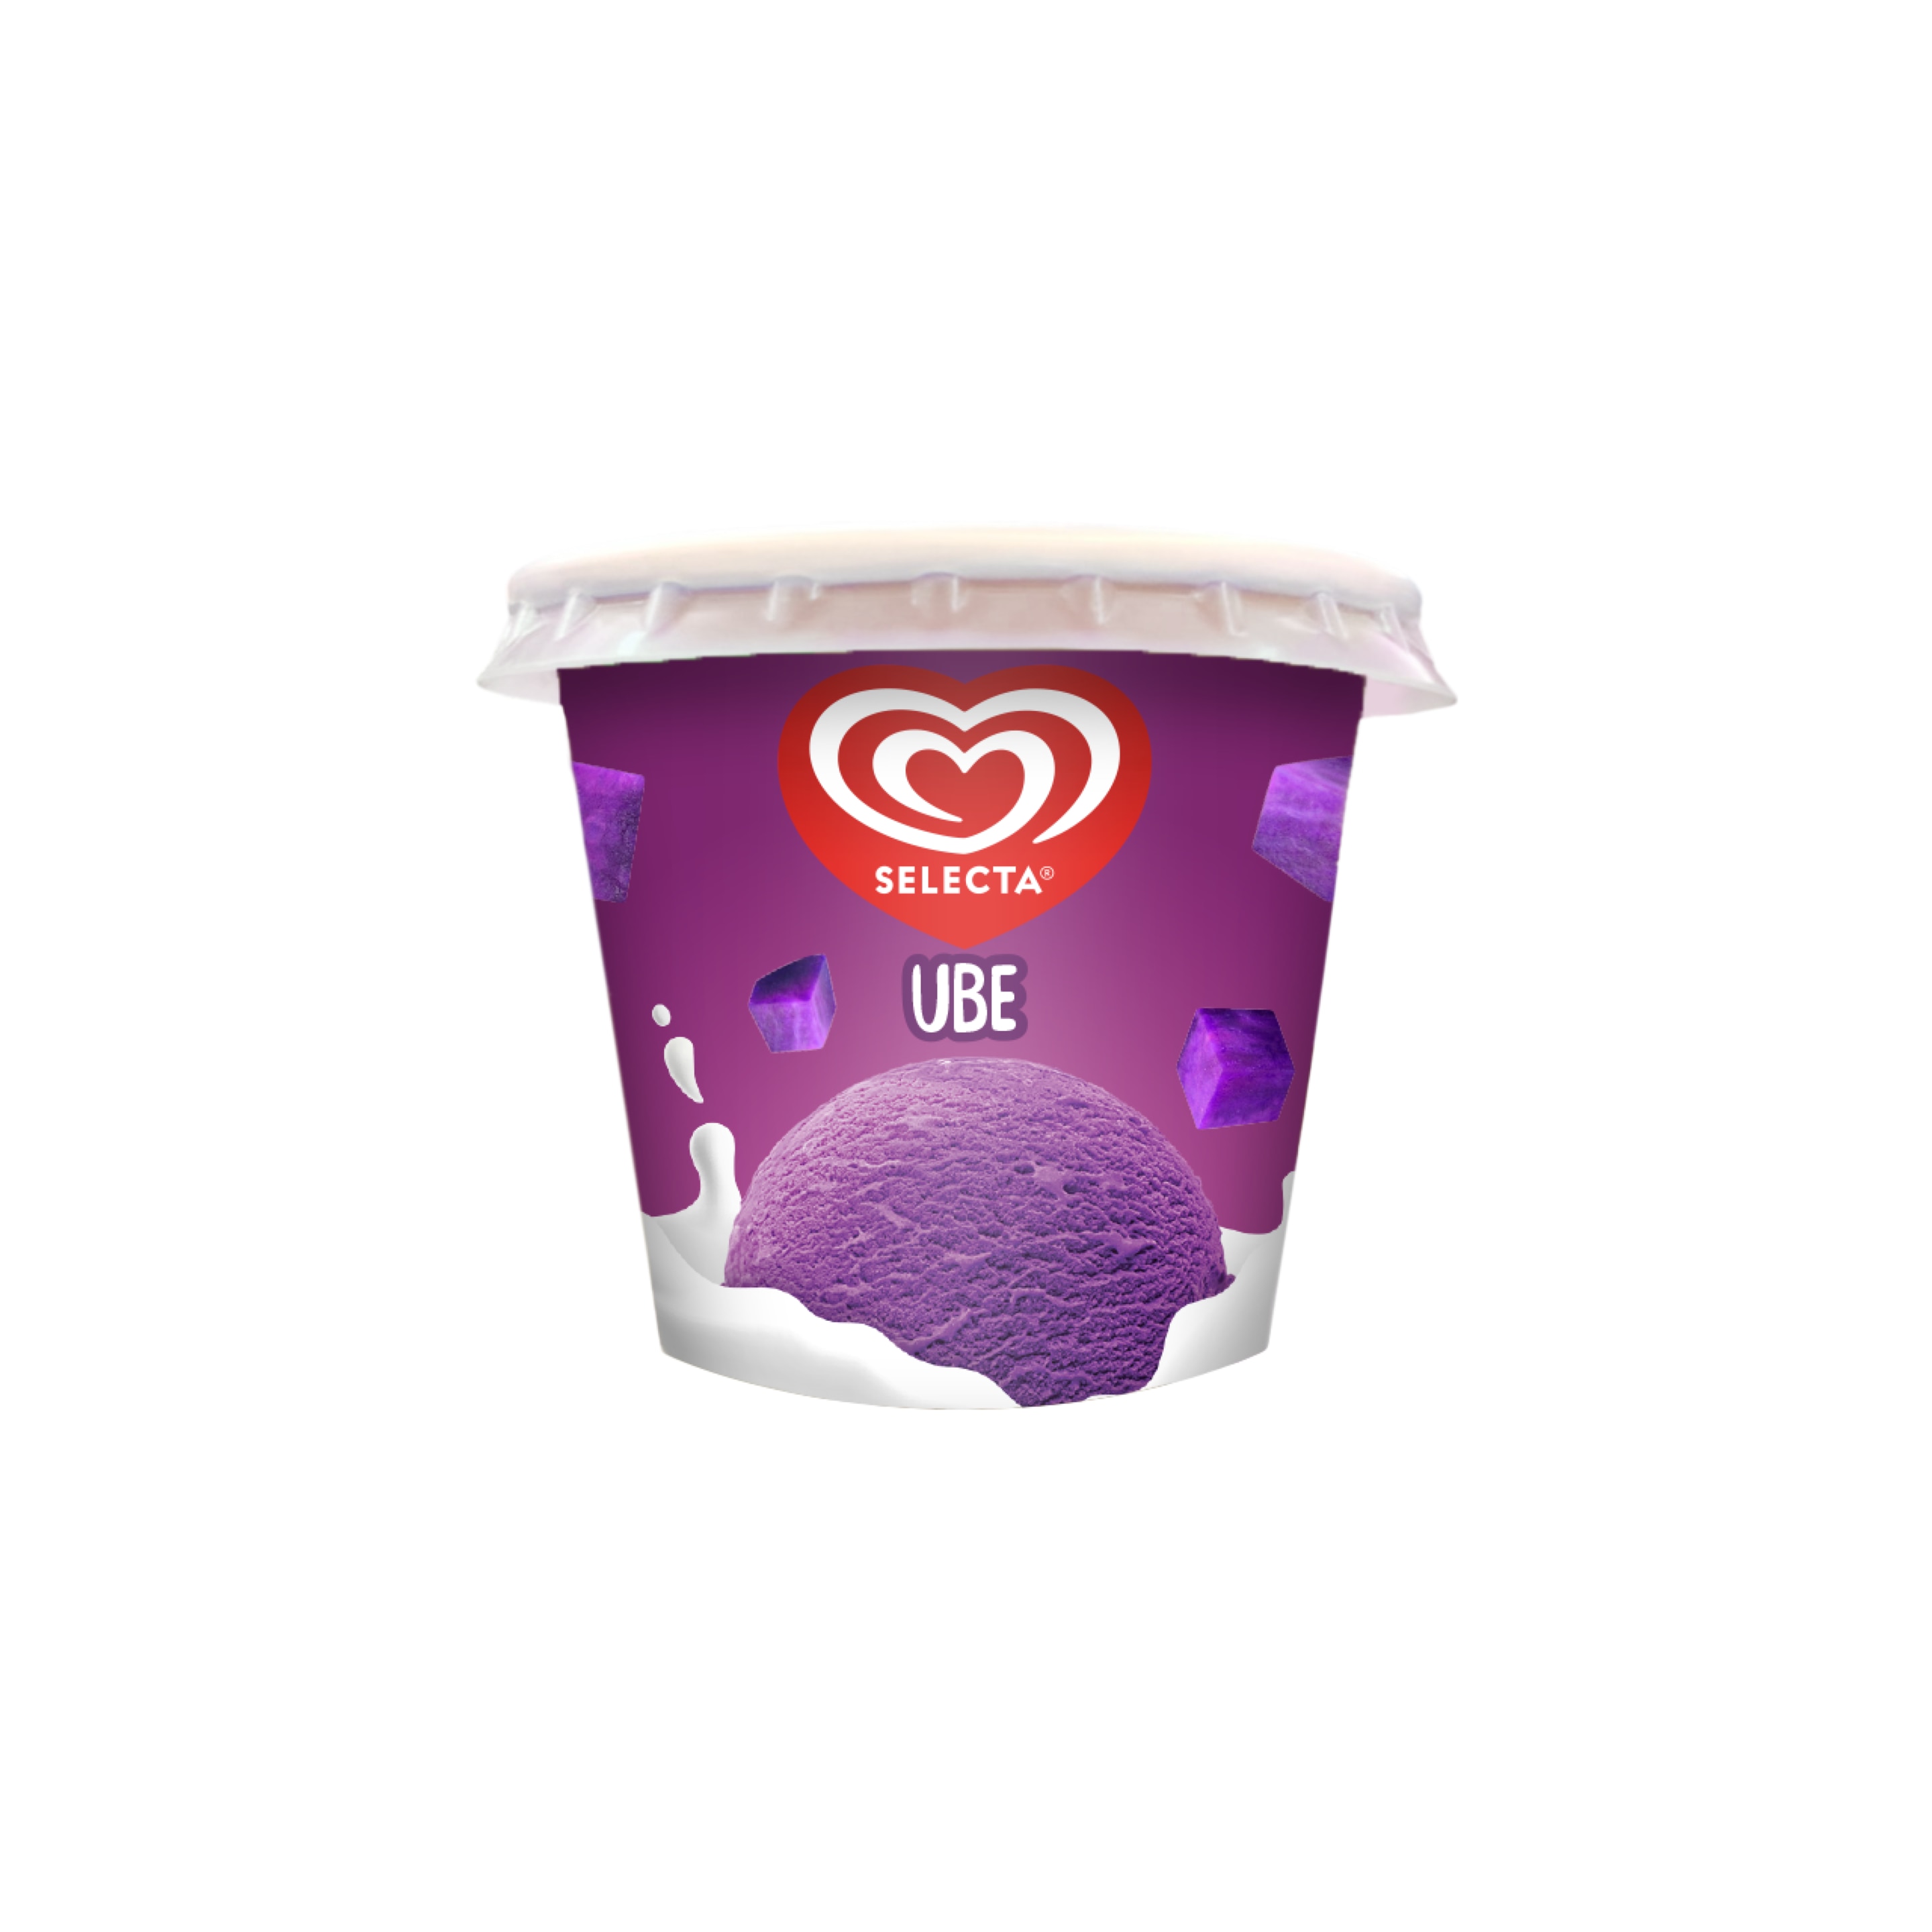 Selecta Creamdae Ube Cup